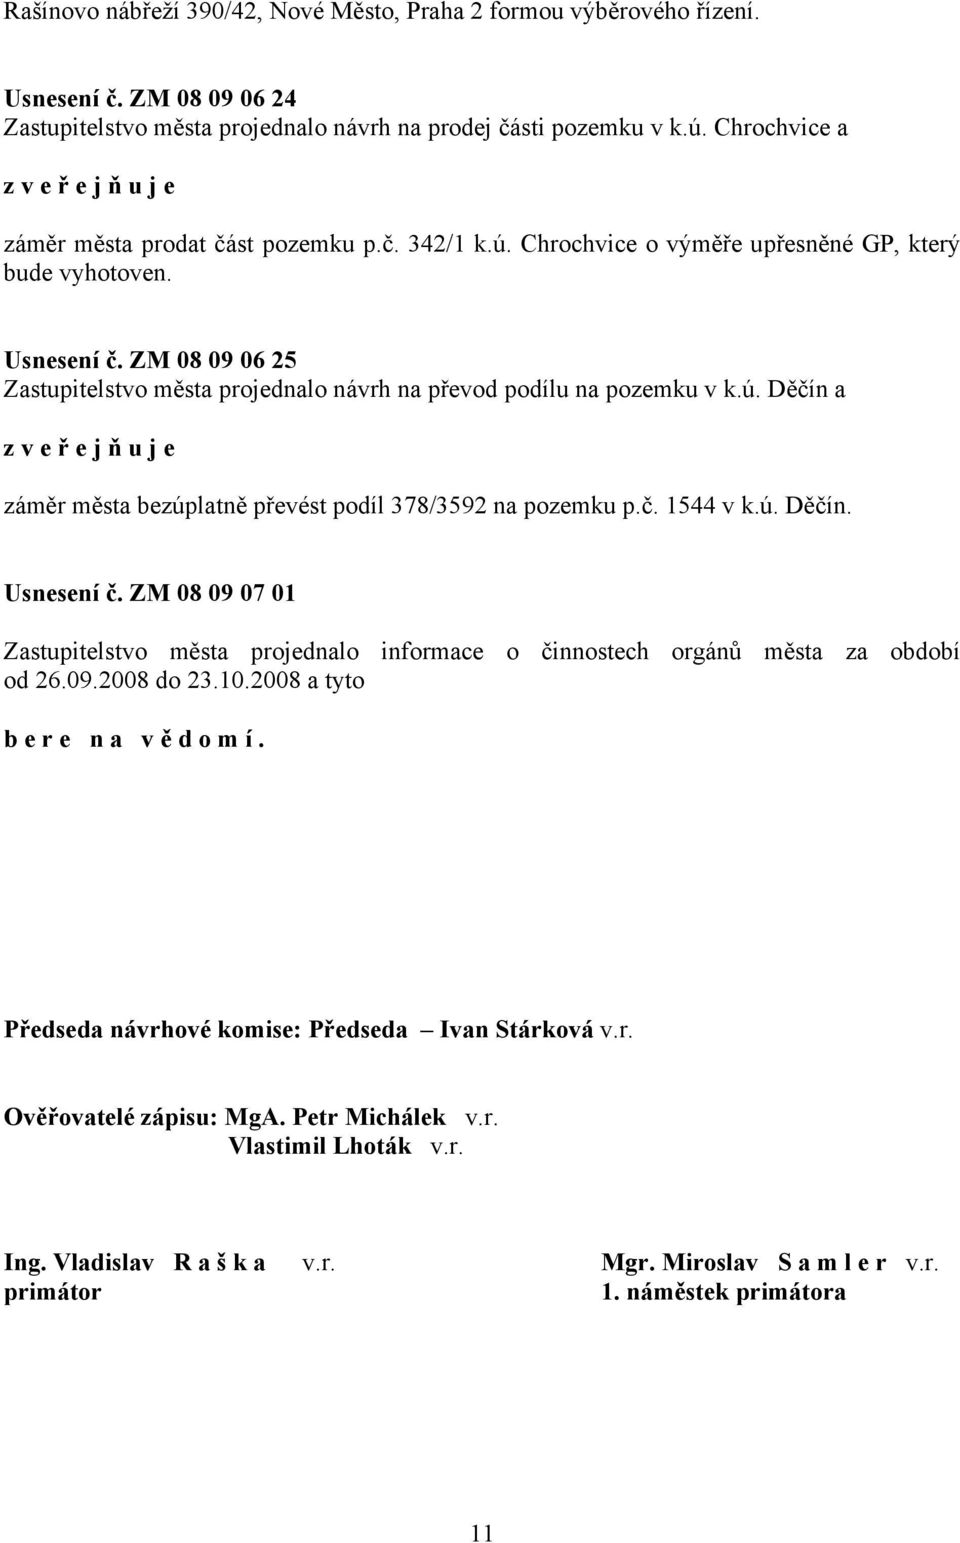 ZM 08 09 06 25 Zastupitelstvo města projednalo návrh na převod podílu na pozemku v k.ú. Děčín a záměr města bezúplatně převést podíl 378/3592 na pozemku p.č. 1544 v k.ú. Děčín. Usnesení č.